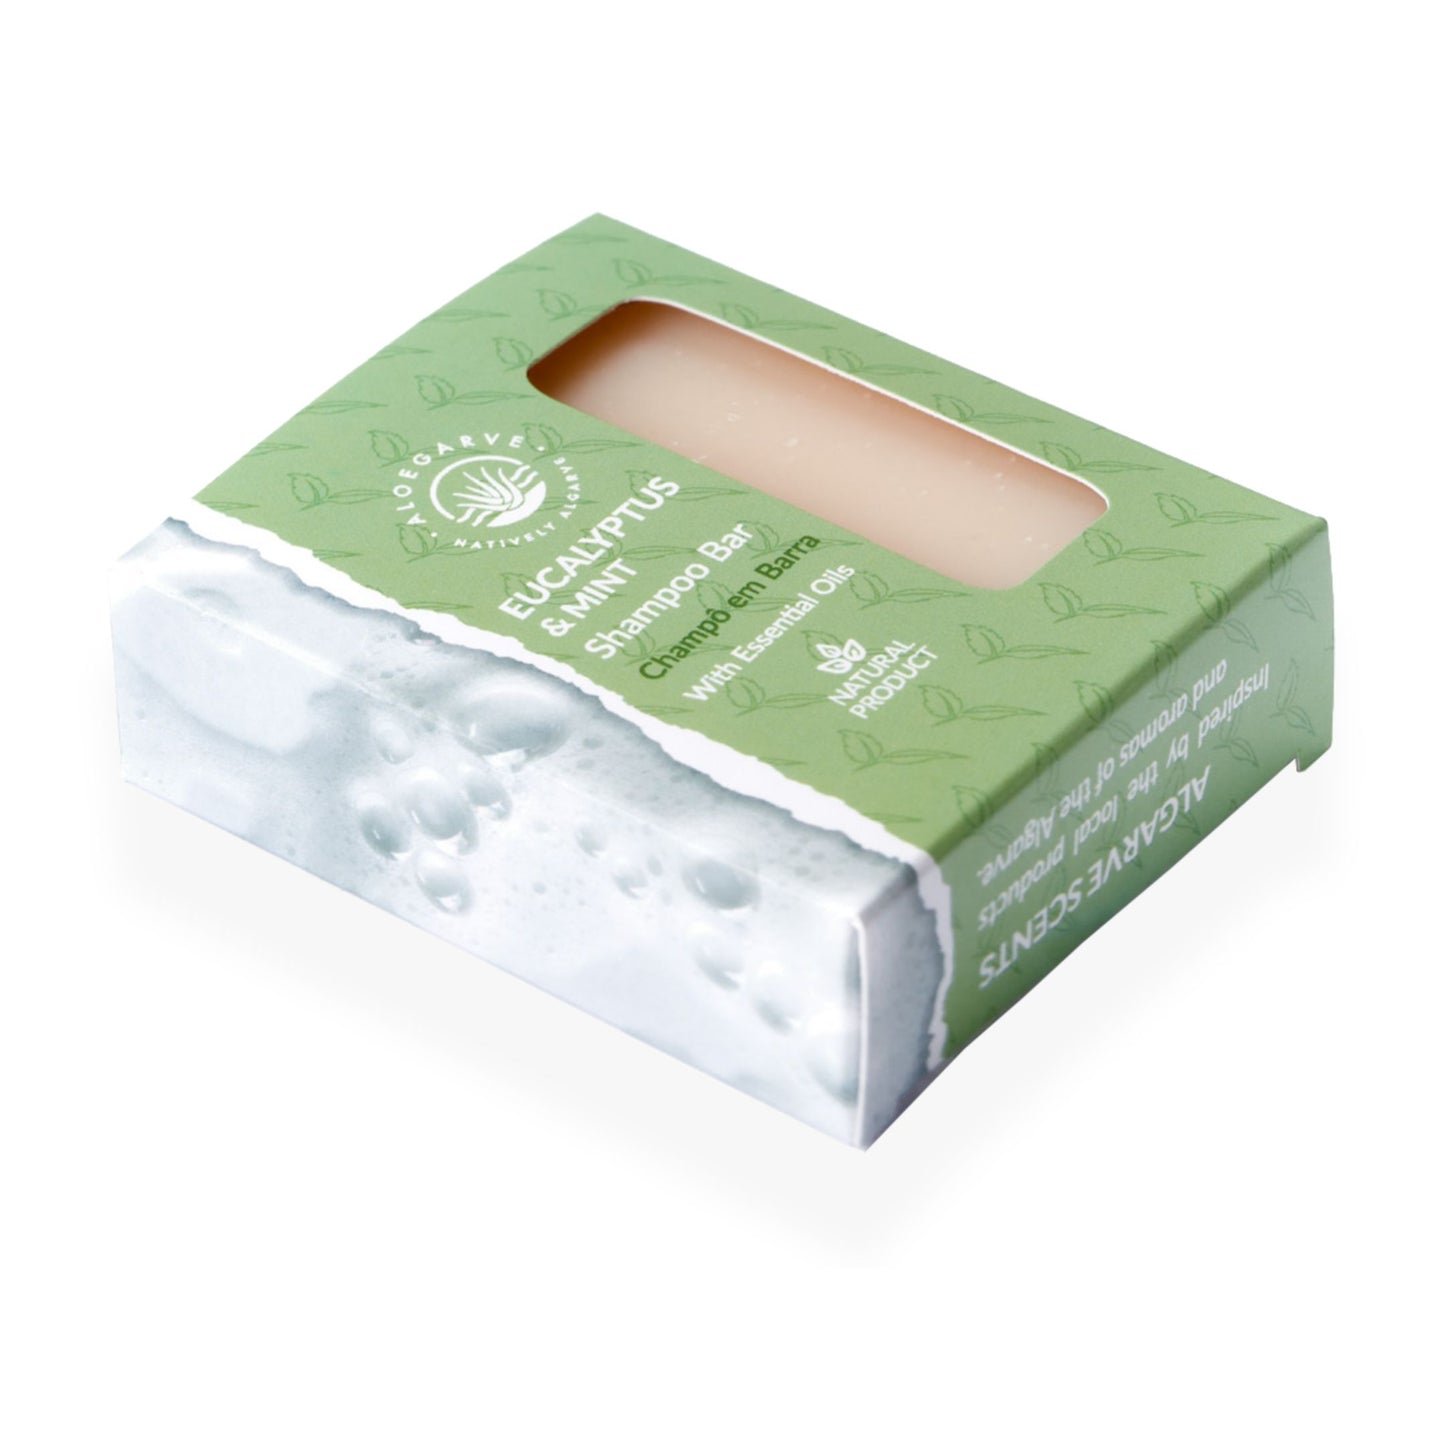 „Natural Silk“ – Shampoo Bar 100g